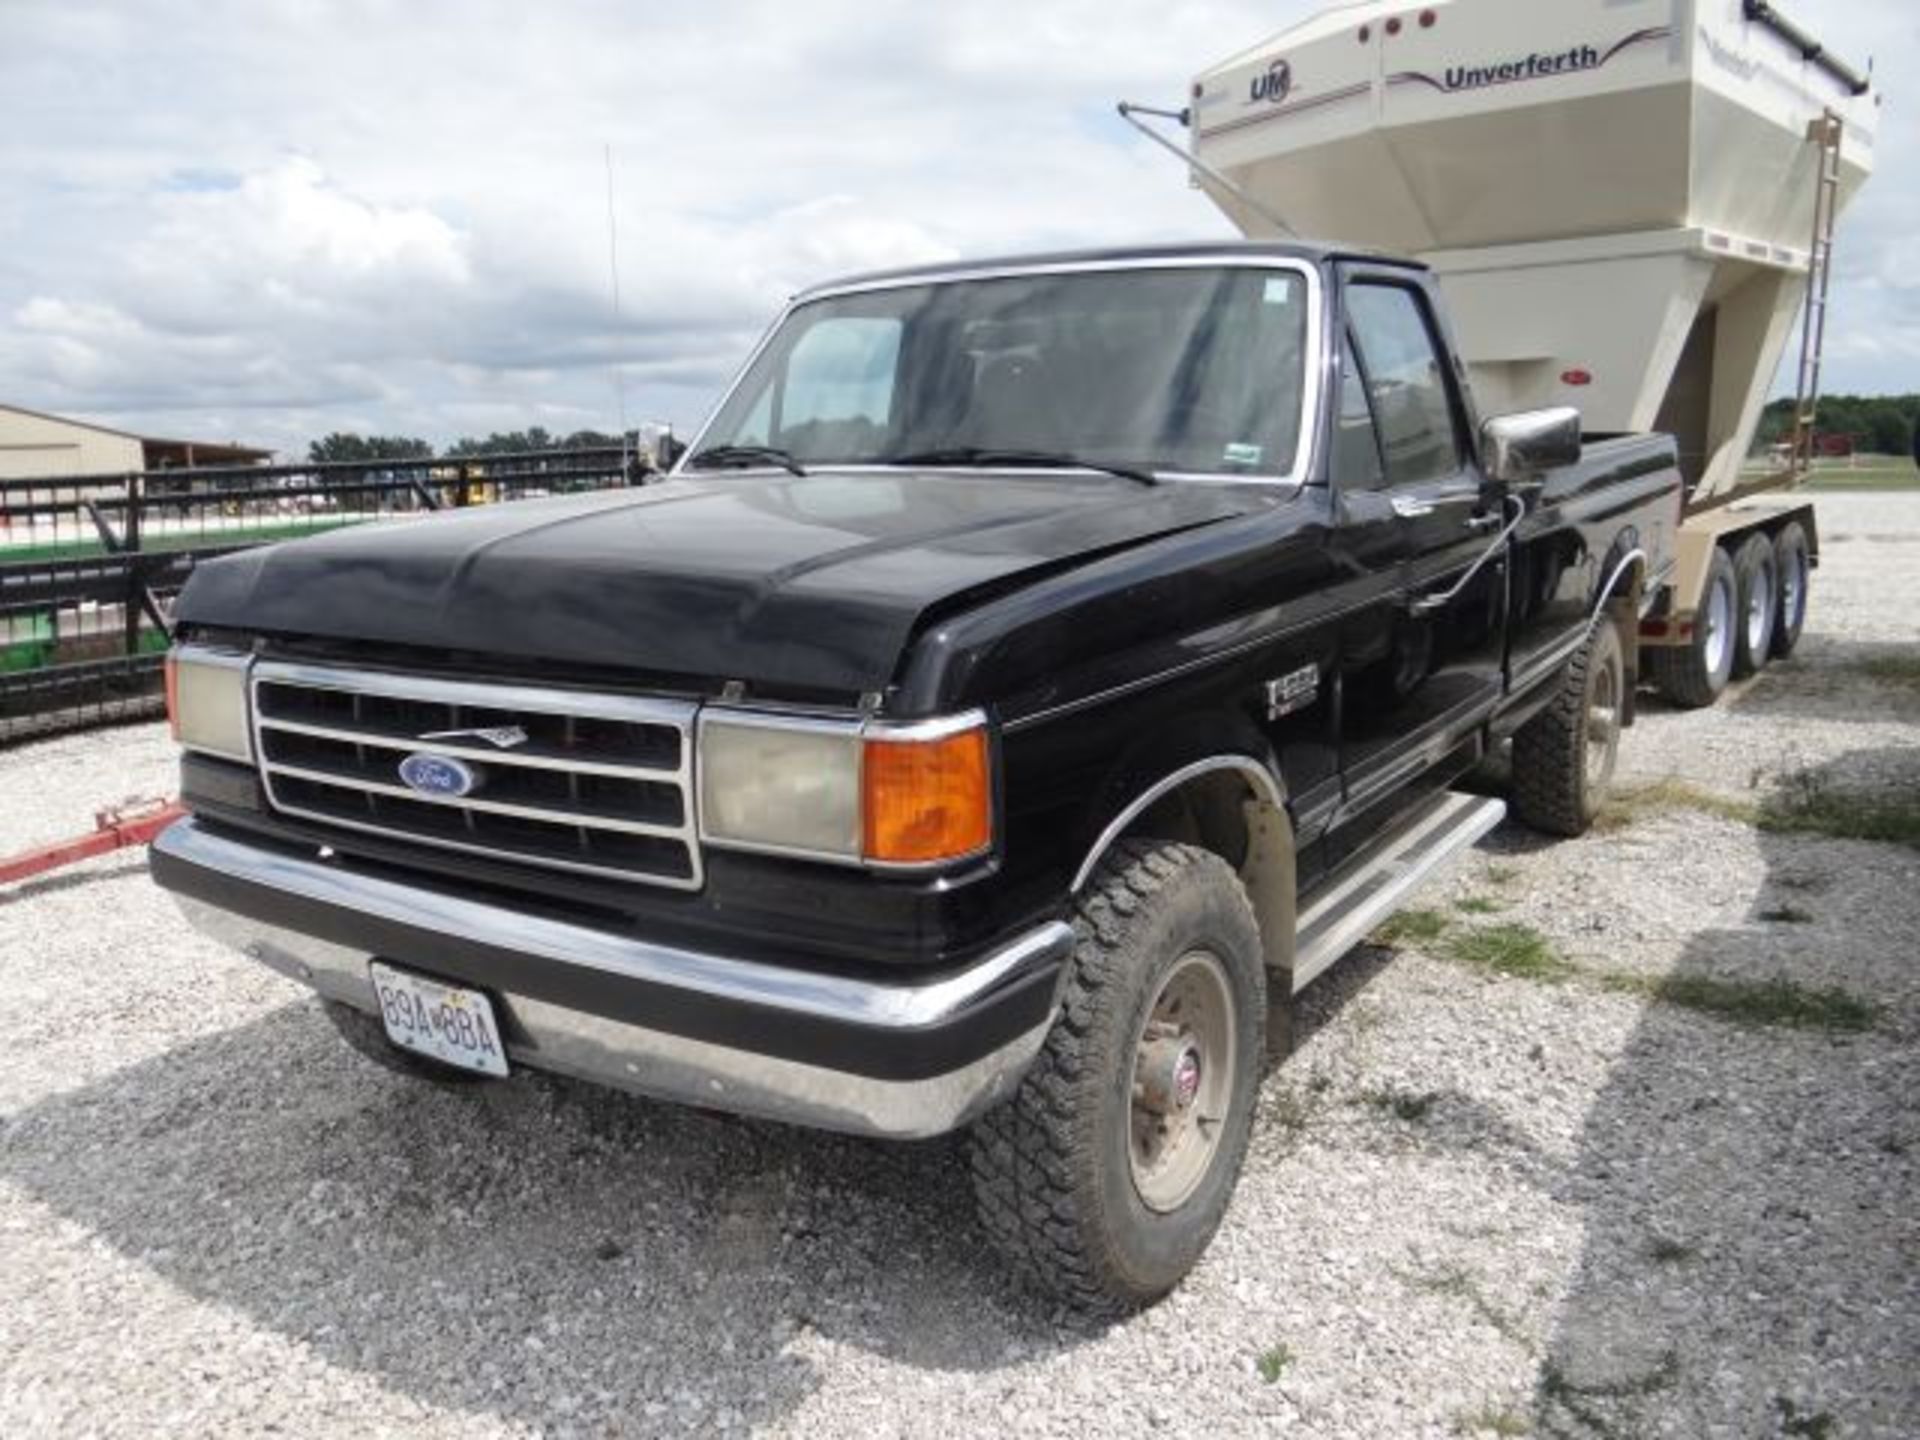 1989 Ford F250 XLT Truck 4wd, Diesel, Power Windows & Locks, Title in the Office, vin#886441